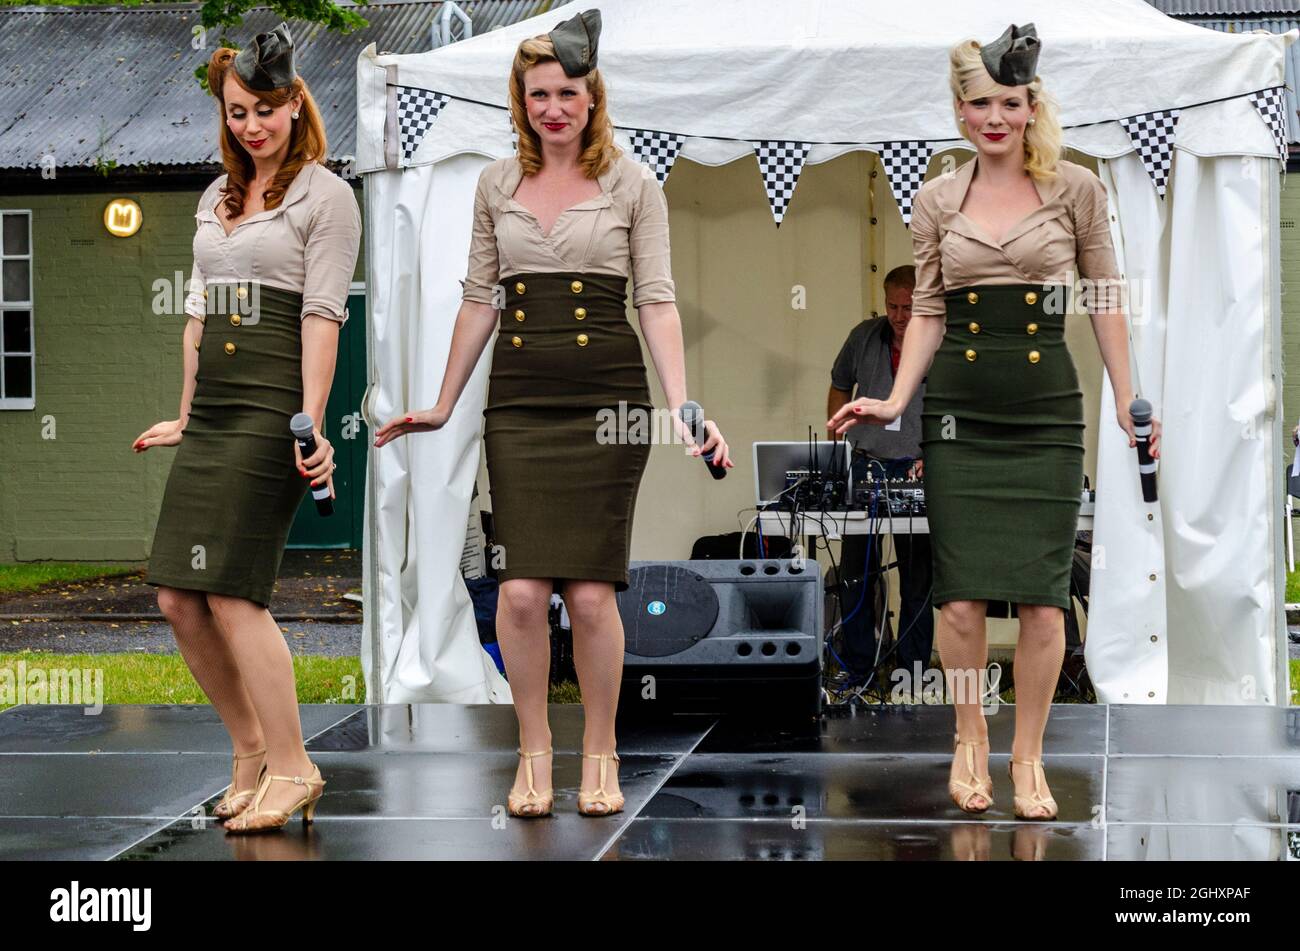 Les poupées de Manhattan chantent en Angleterre lors d'un événement de renouveau militaire. Chanteuses américaines en visite au Royaume-Uni, en train de jouer sous la pluie en portant des uniformes USAAF Banque D'Images